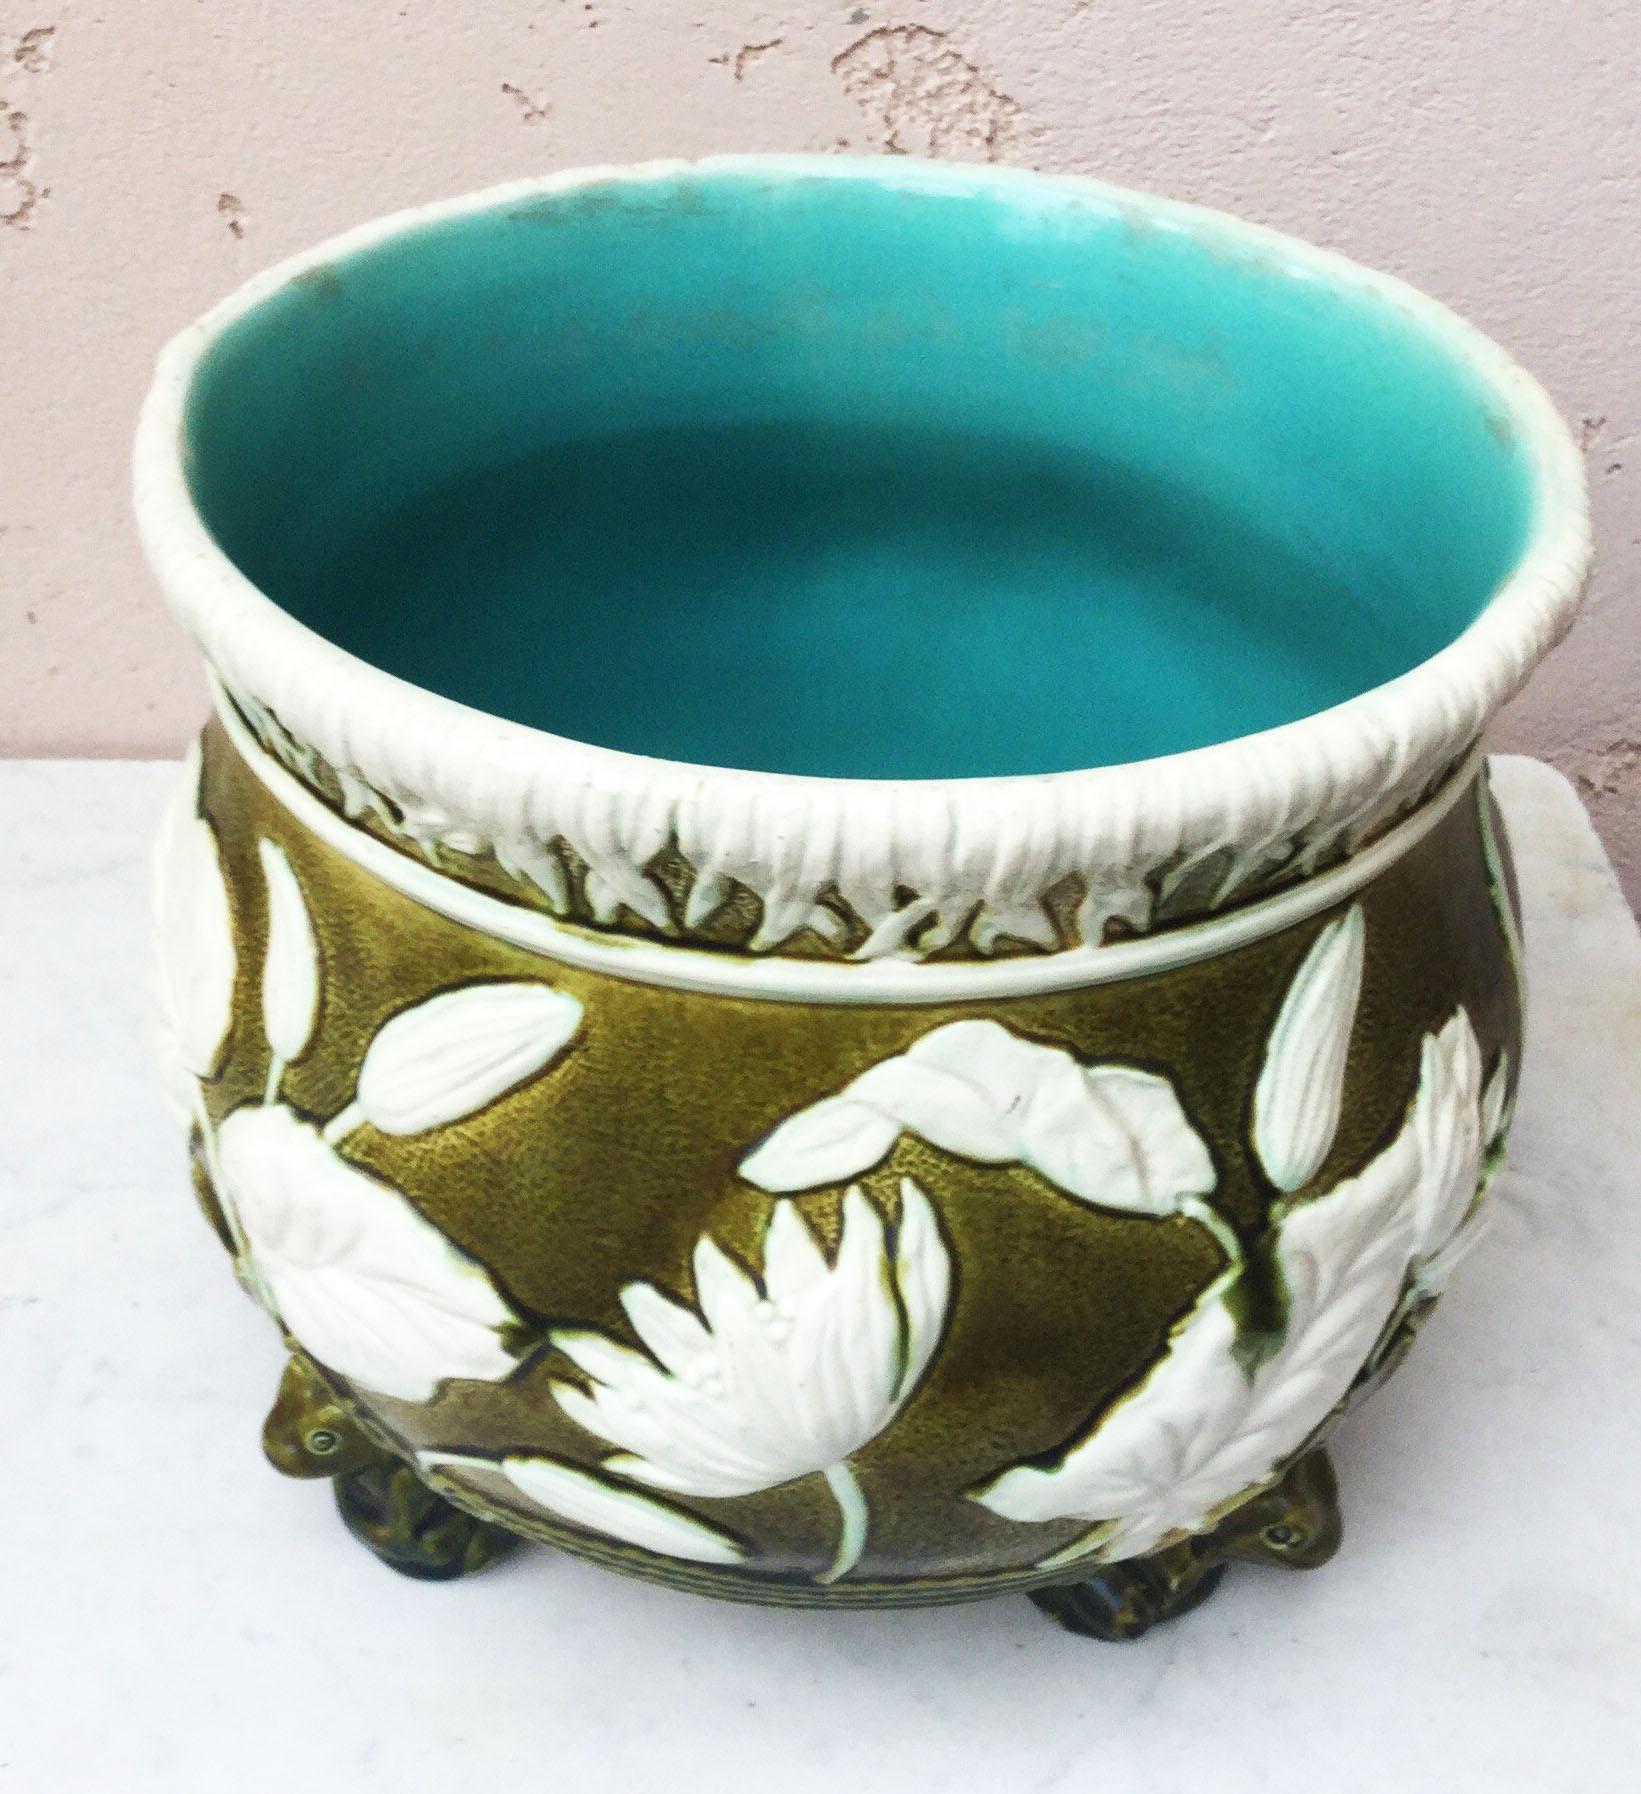 wardle england pottery